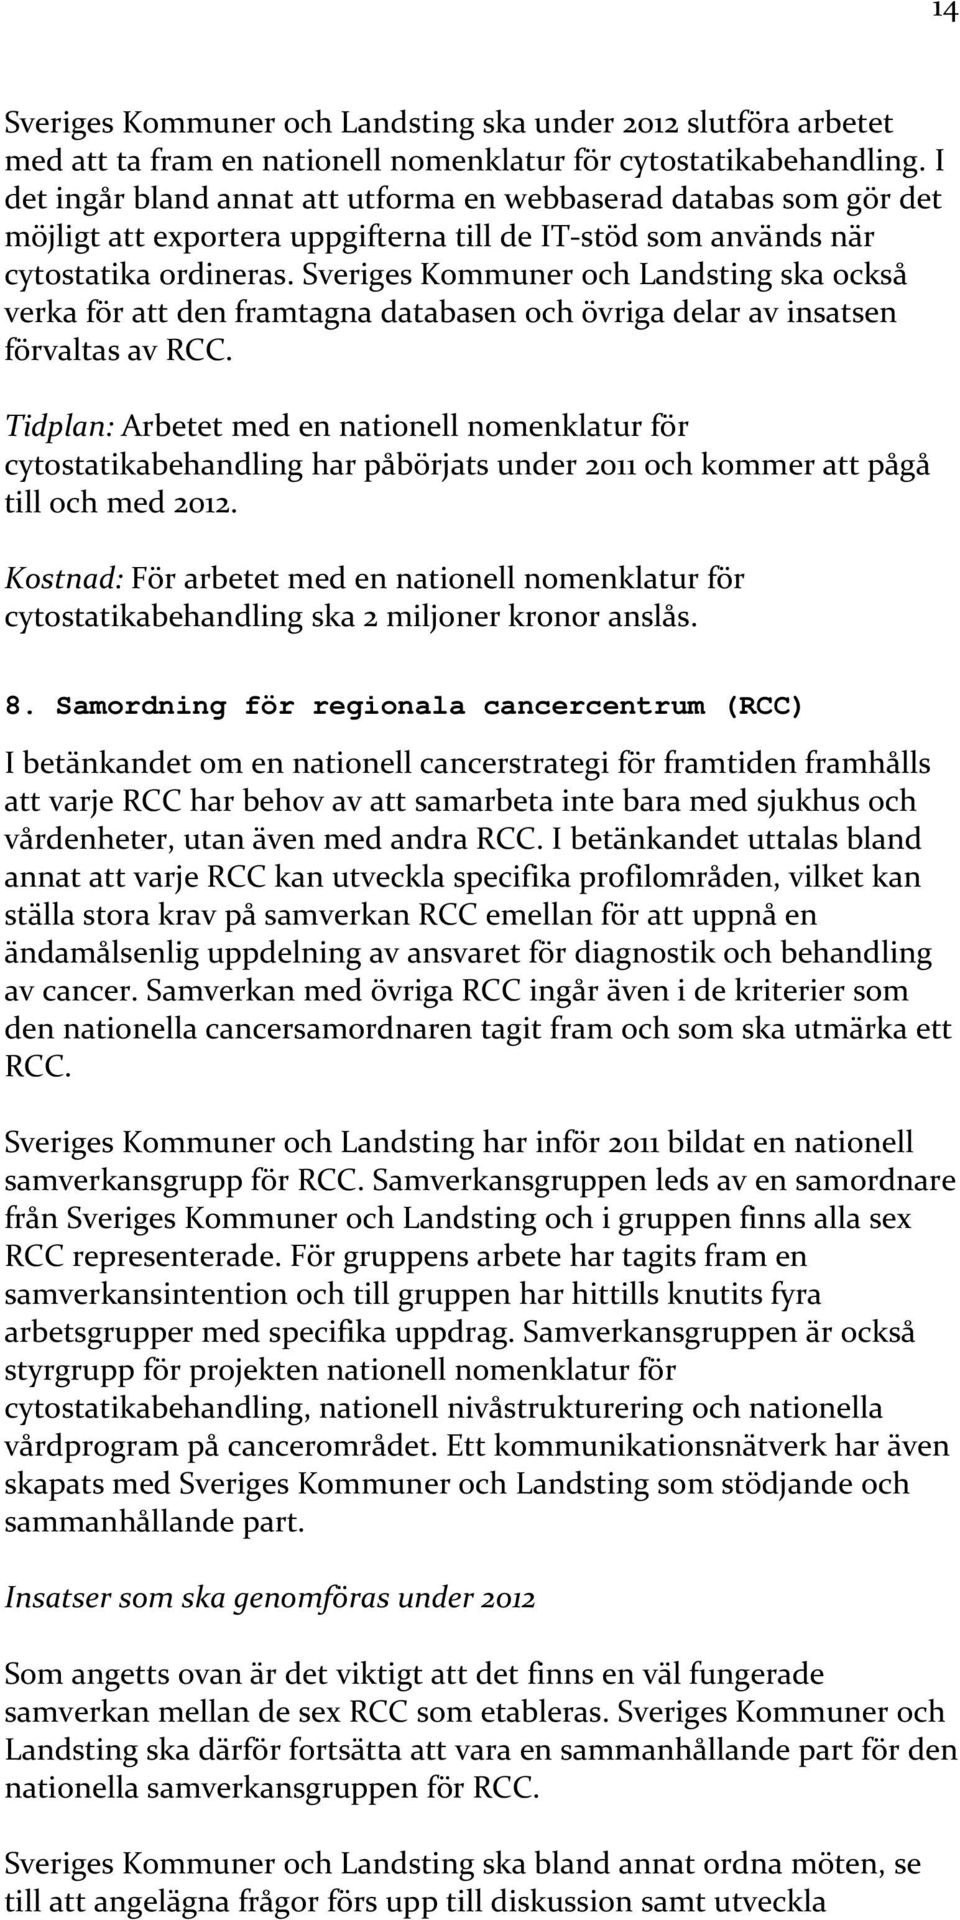 Sveriges Kommuner och Landsting ska också verka för att den framtagna databasen och övriga delar av insatsen förvaltas av RCC.